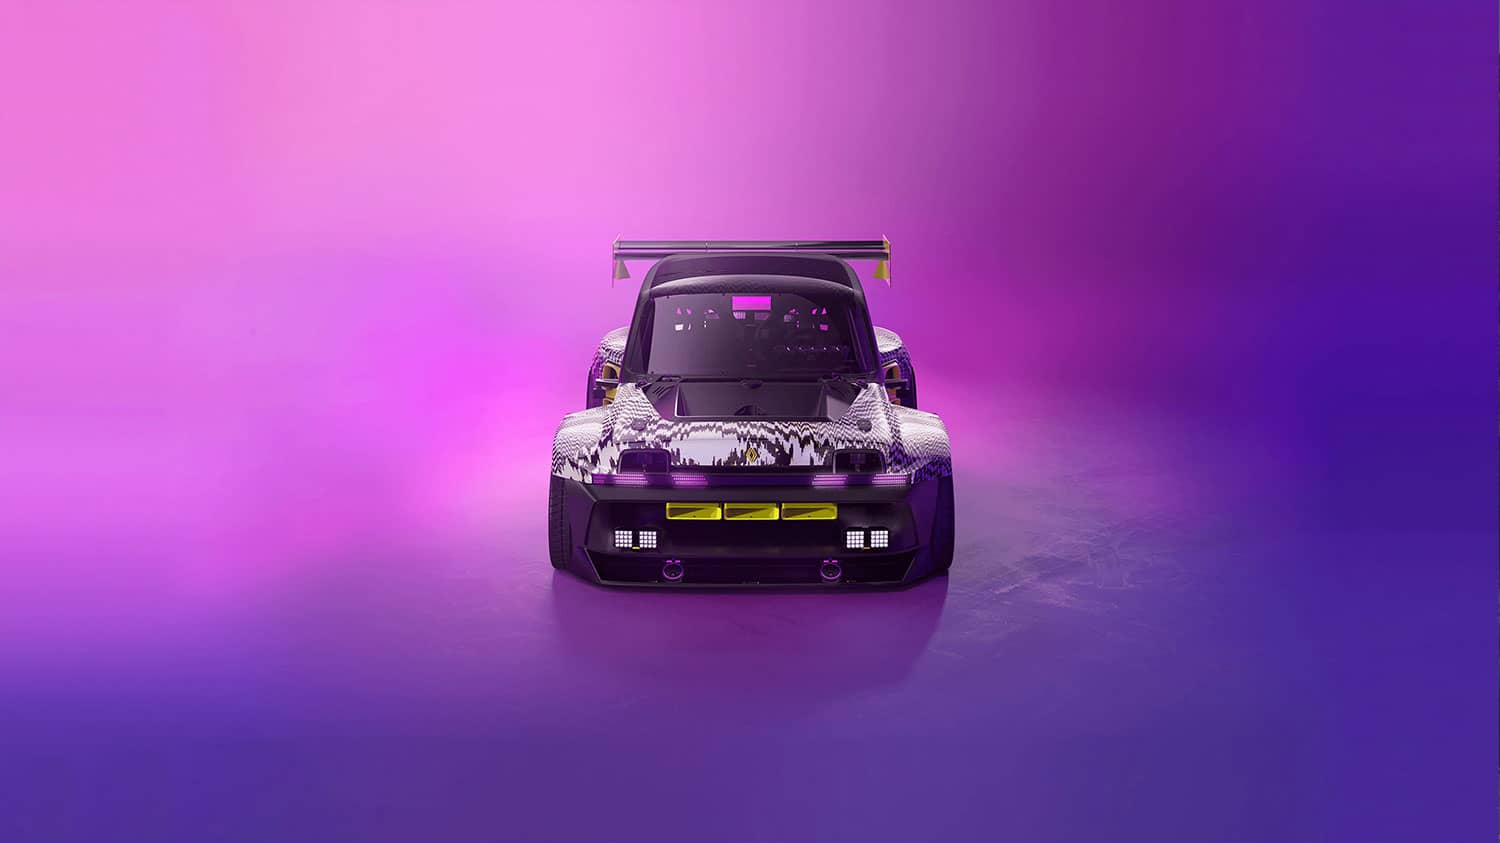 מבט חזיתי על רכב קונספט R5 Turbo 3E, על רקע תאורה סגולה